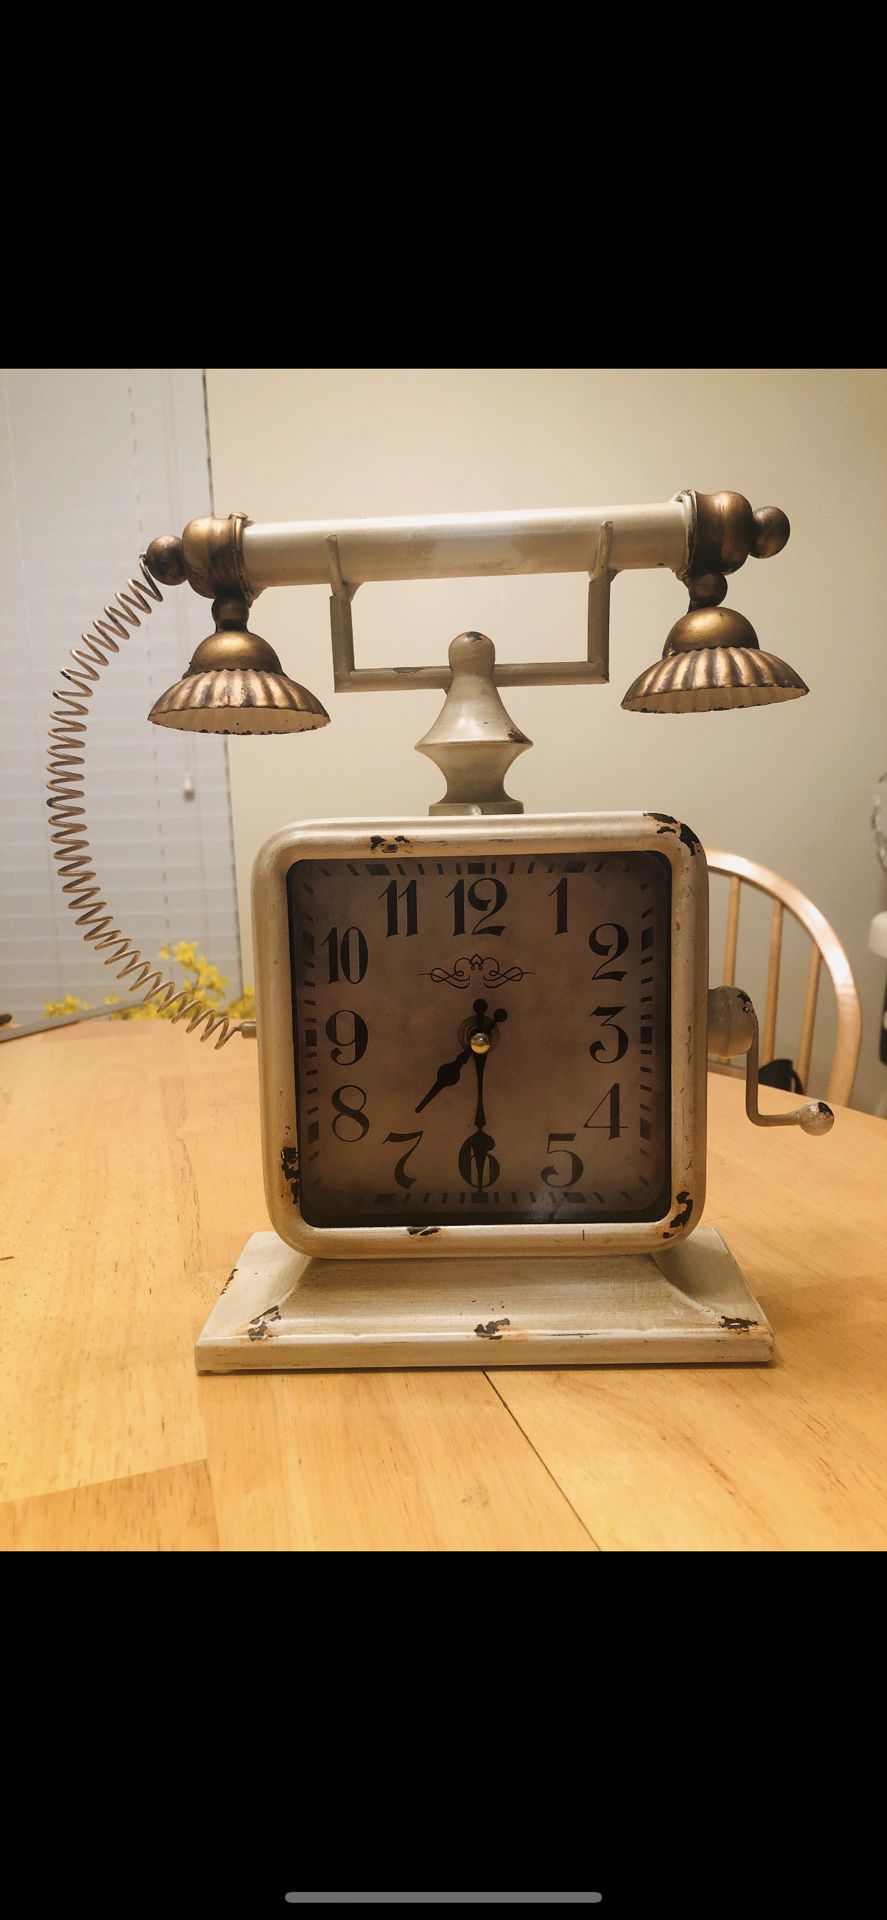 Phone clock antique decor